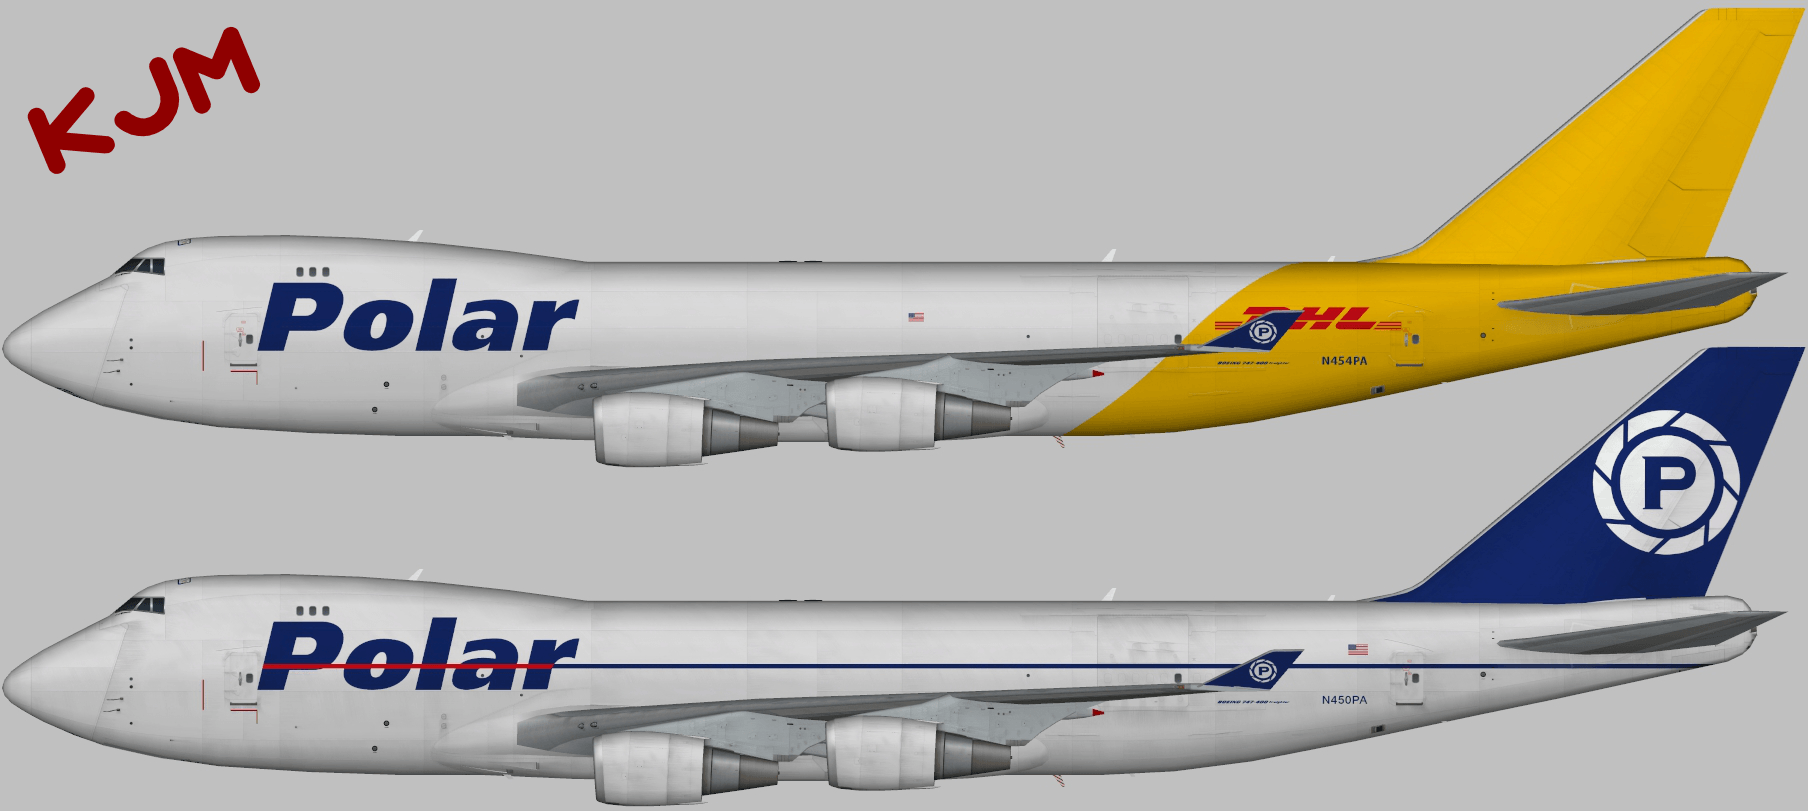 Polar Air Cargo Logo - Polar Air Cargo